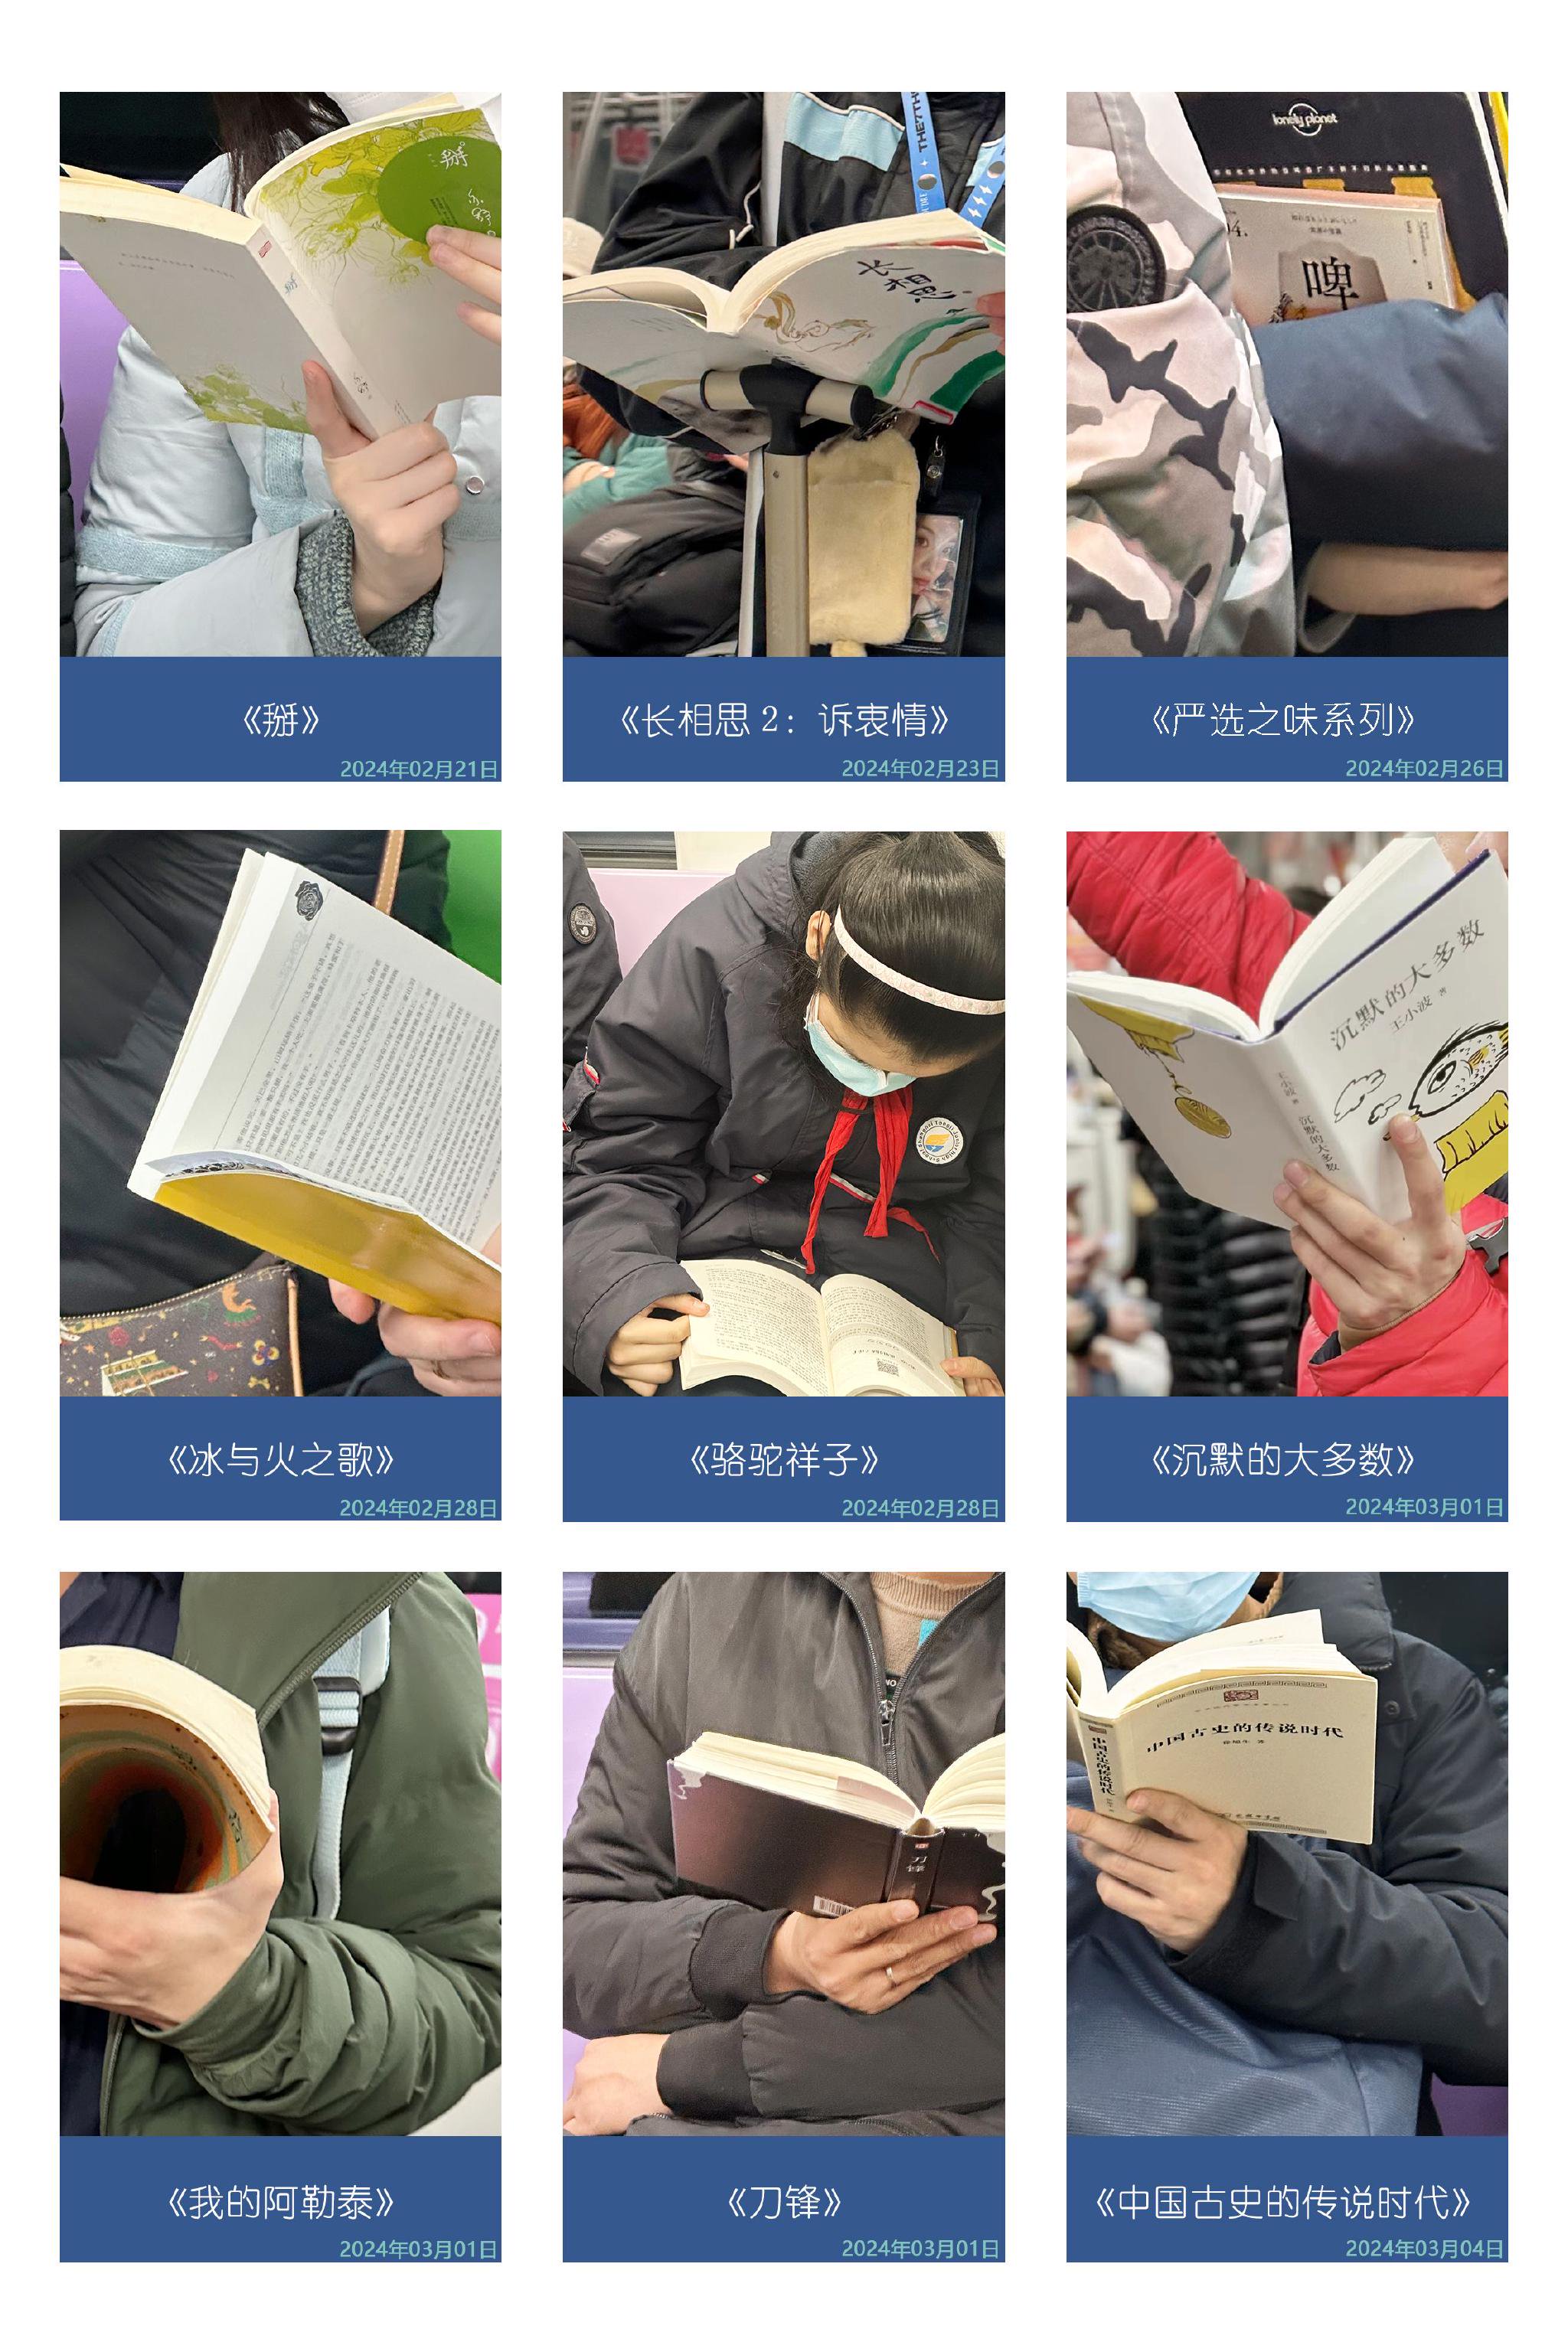 被带上地铁阅读的书籍有一半以上是文学书。